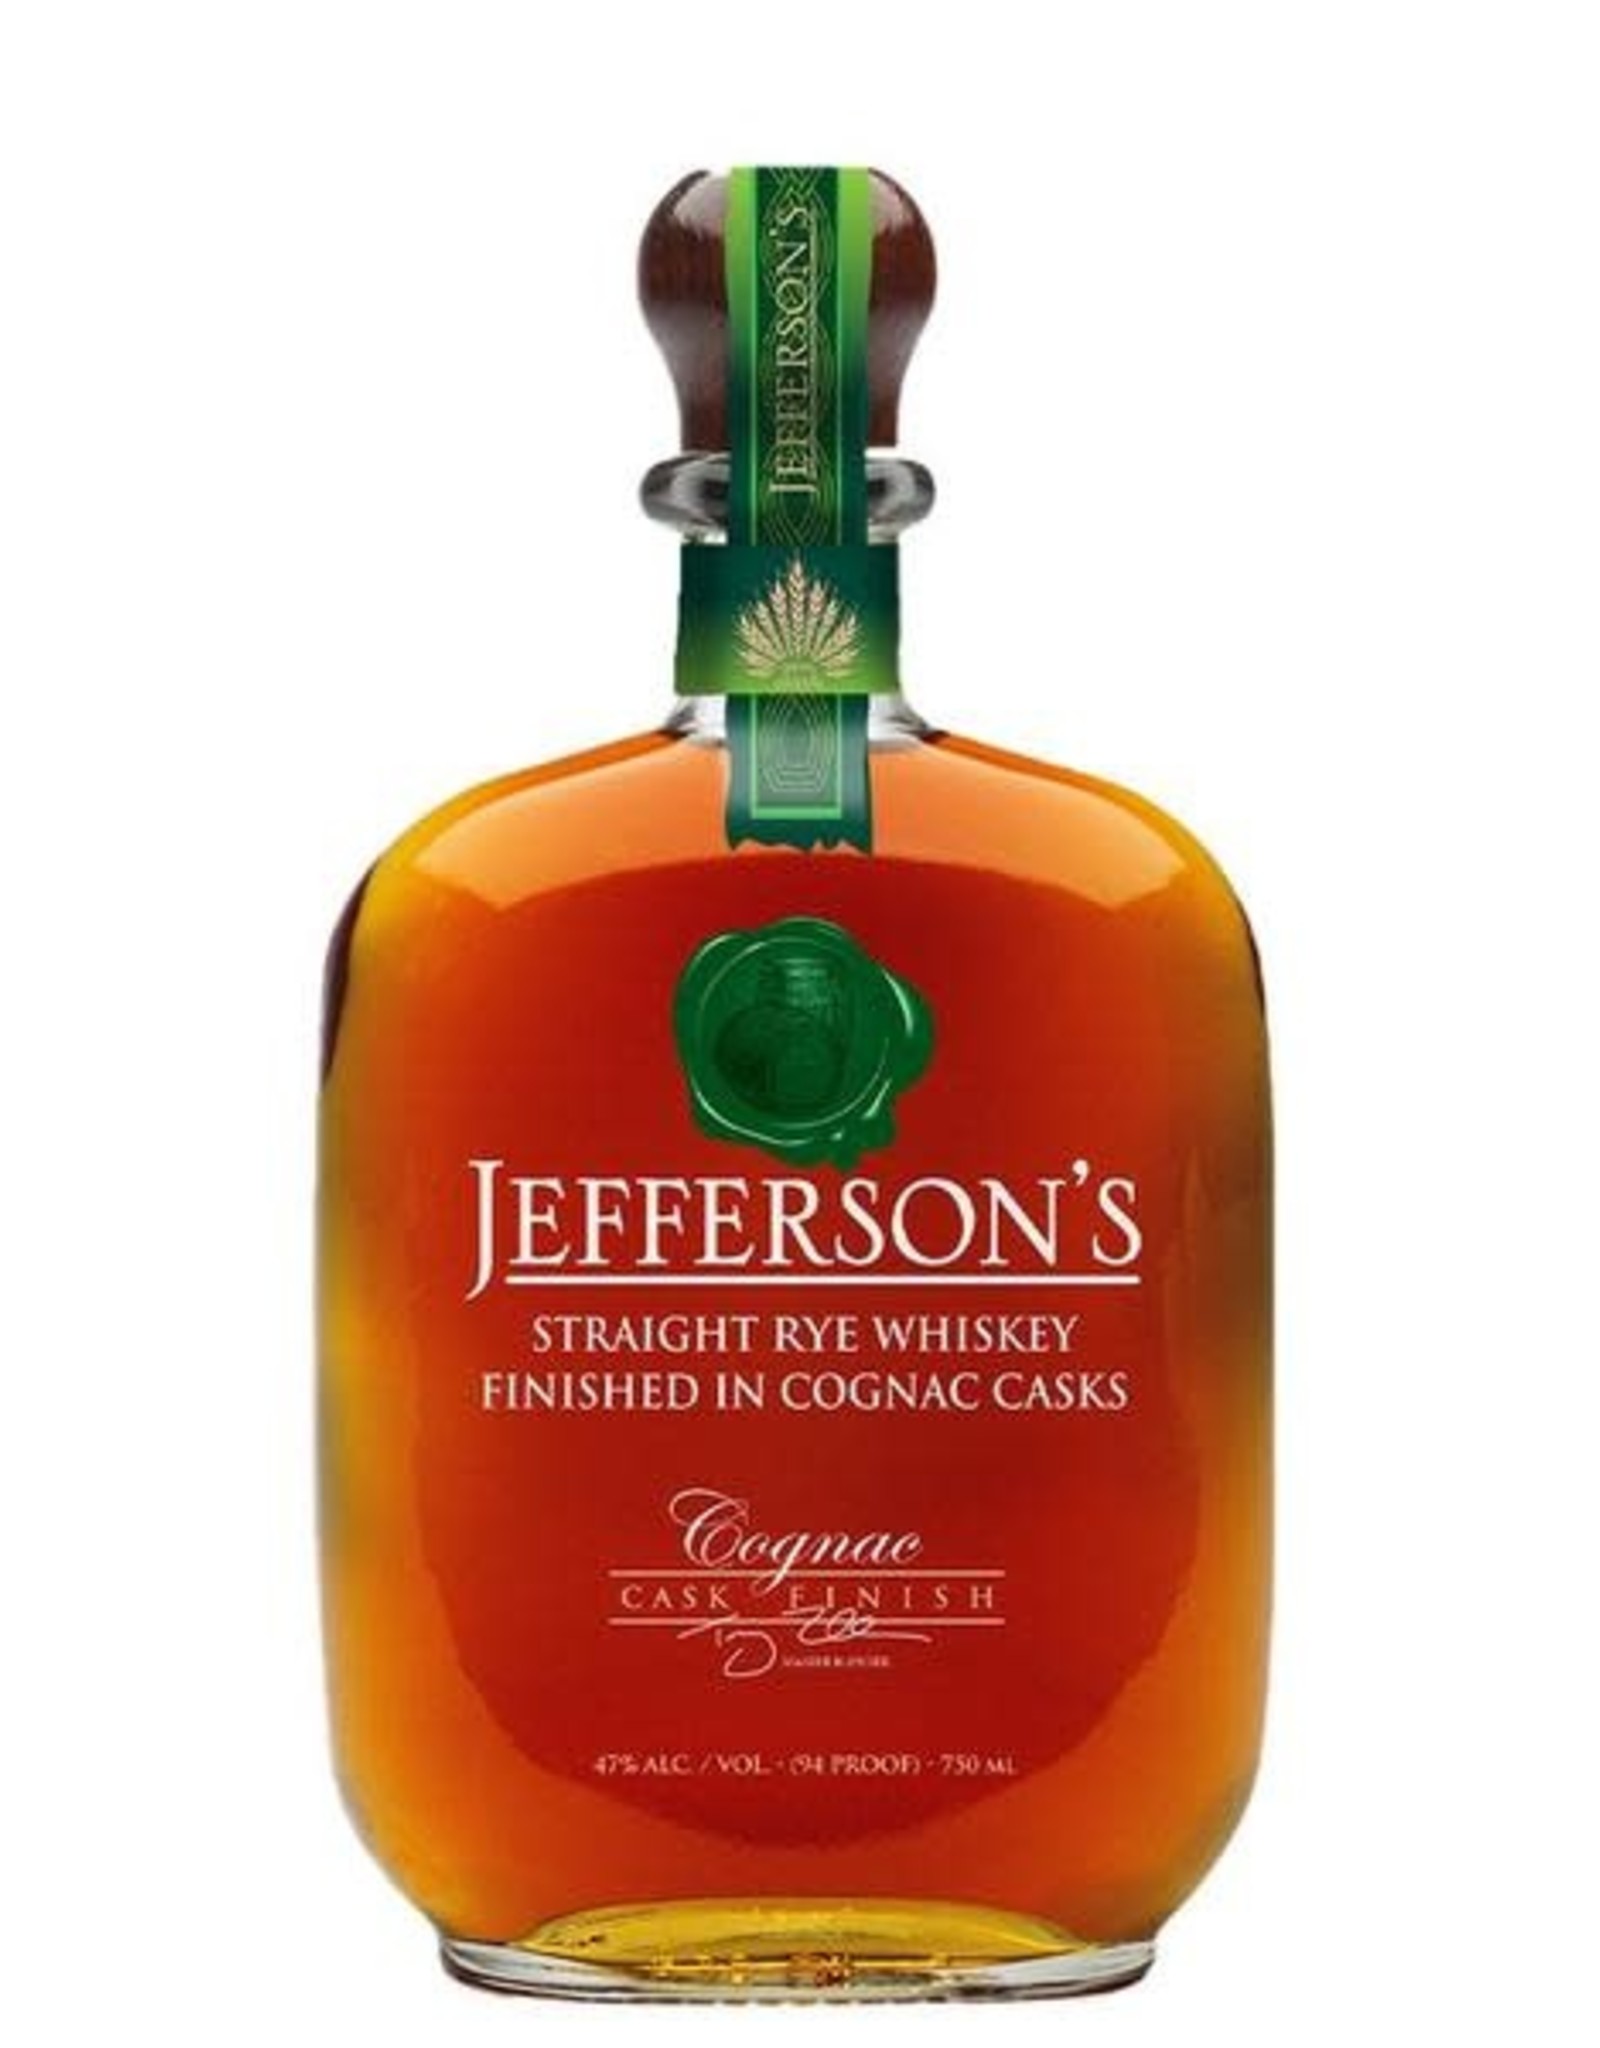 Jefferson's Straight Rye Finished In Cognac Casks